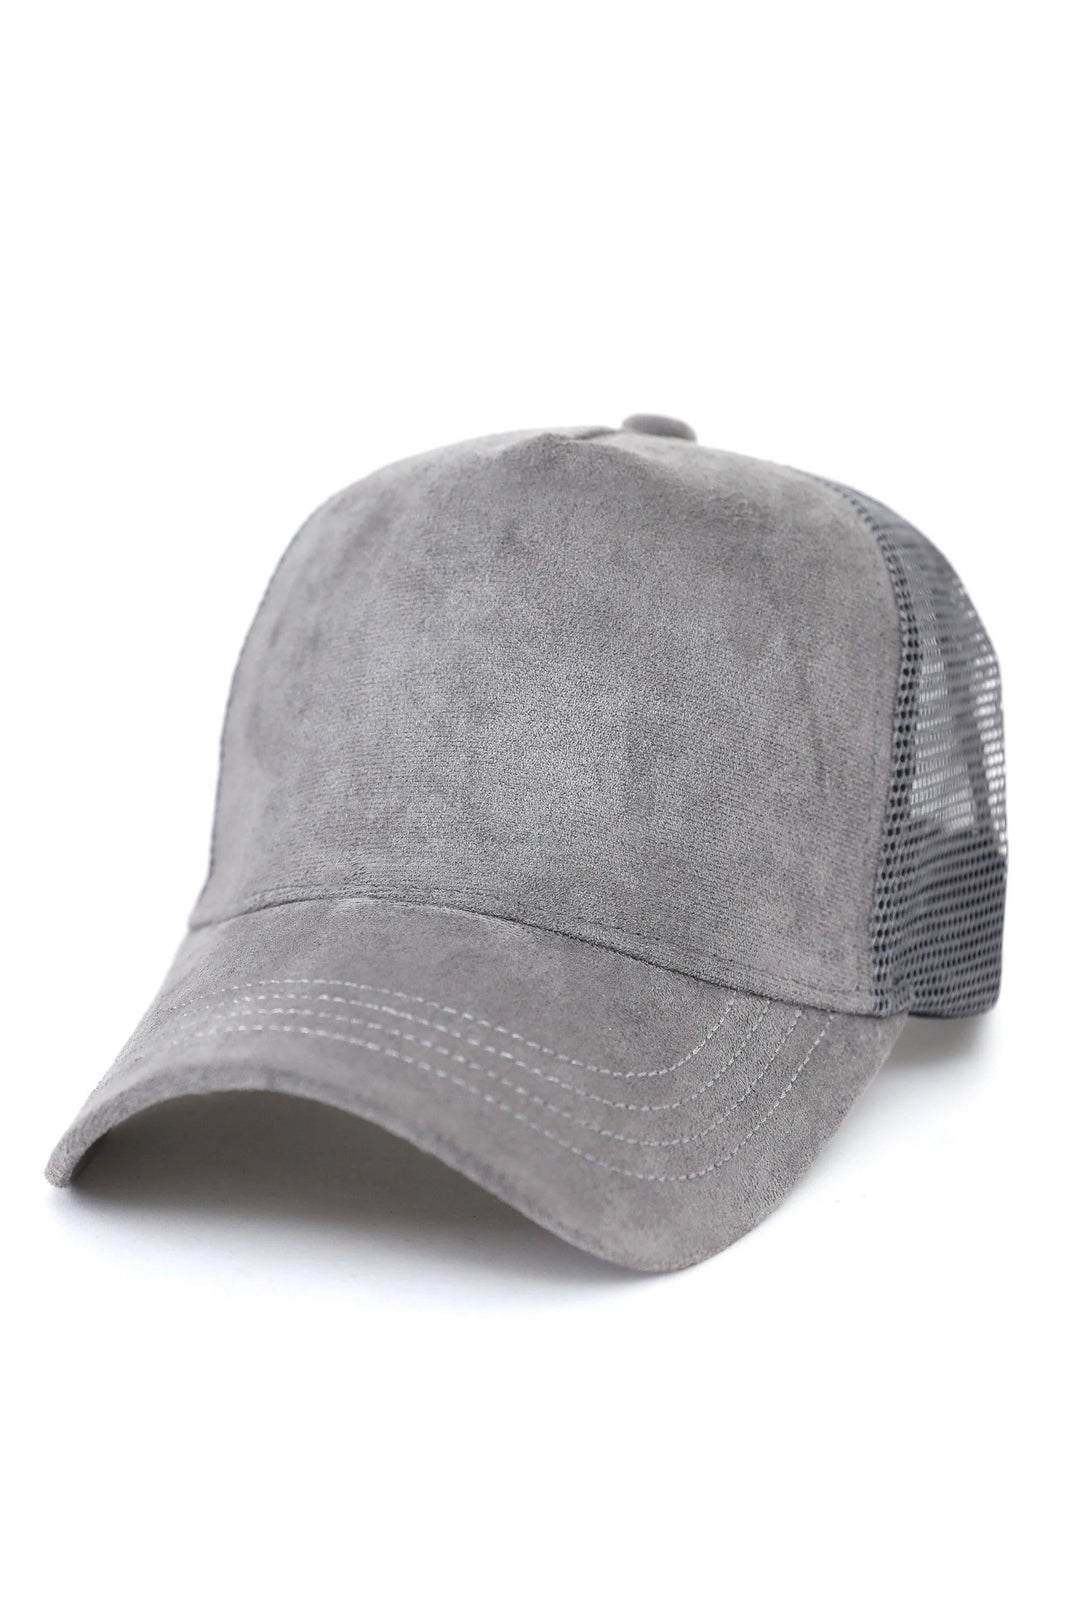 GREY SUEDE CLASSIC CAP